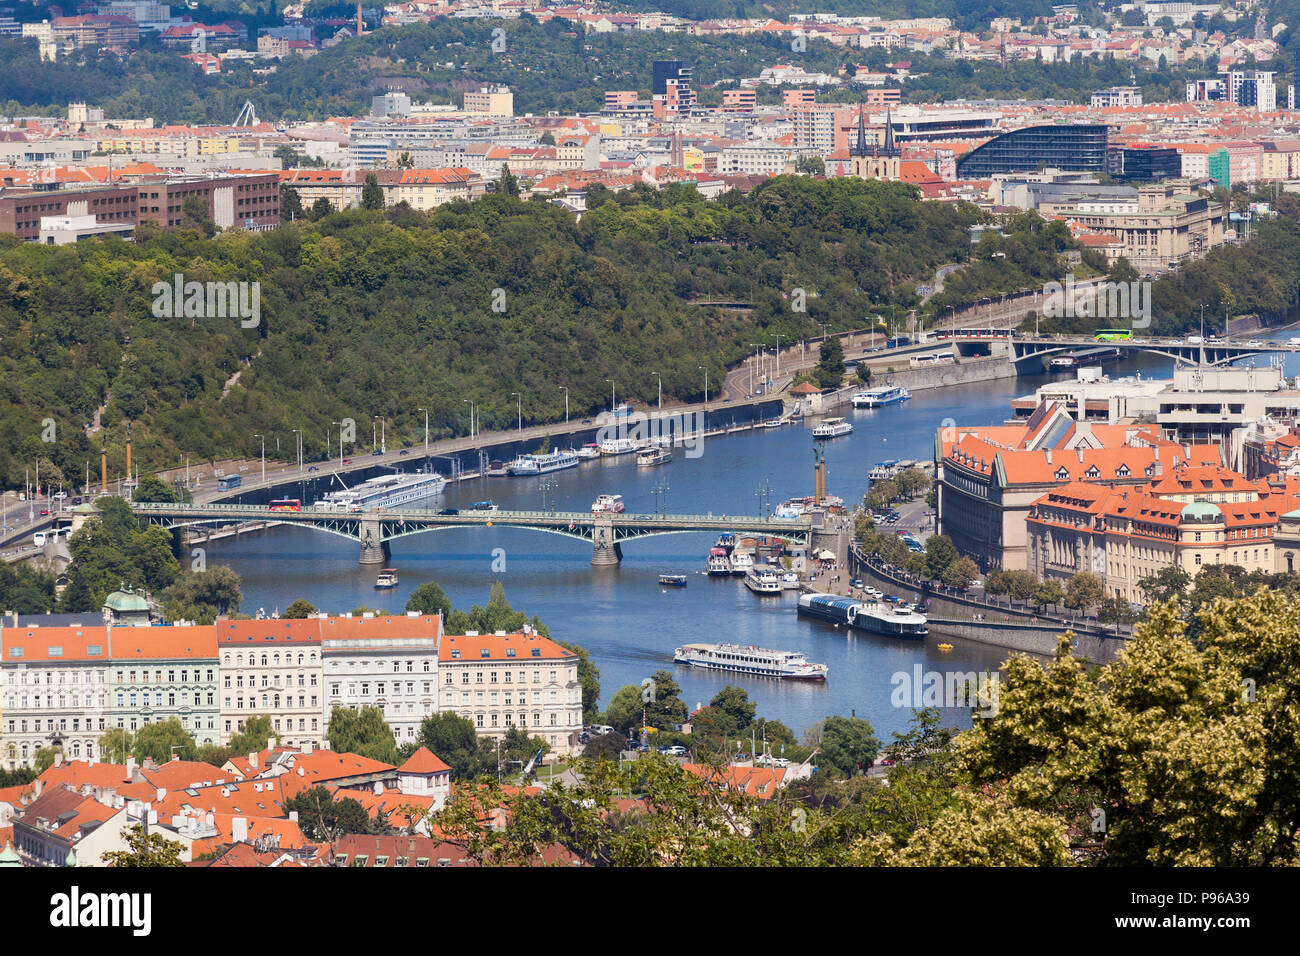 Panorama von Prag in der Nähe des Kloster Strahov, zeigt die Cechuv und Stefanikuv Brücken, helle Sonne, blauer Himmel. Stockfoto